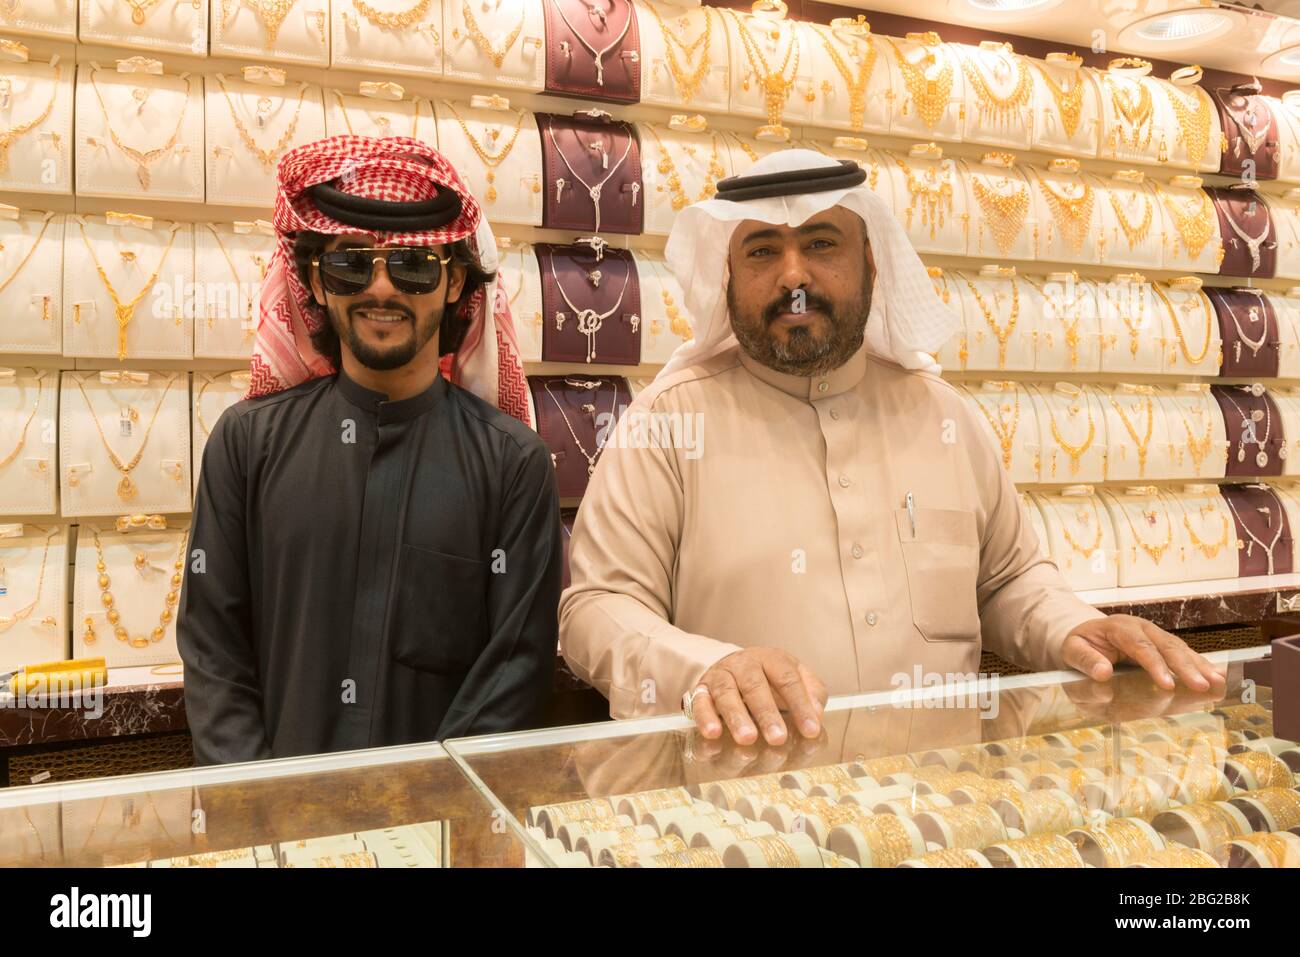 Jewelry store in Taif, Saudi Arabia. Stock Photo